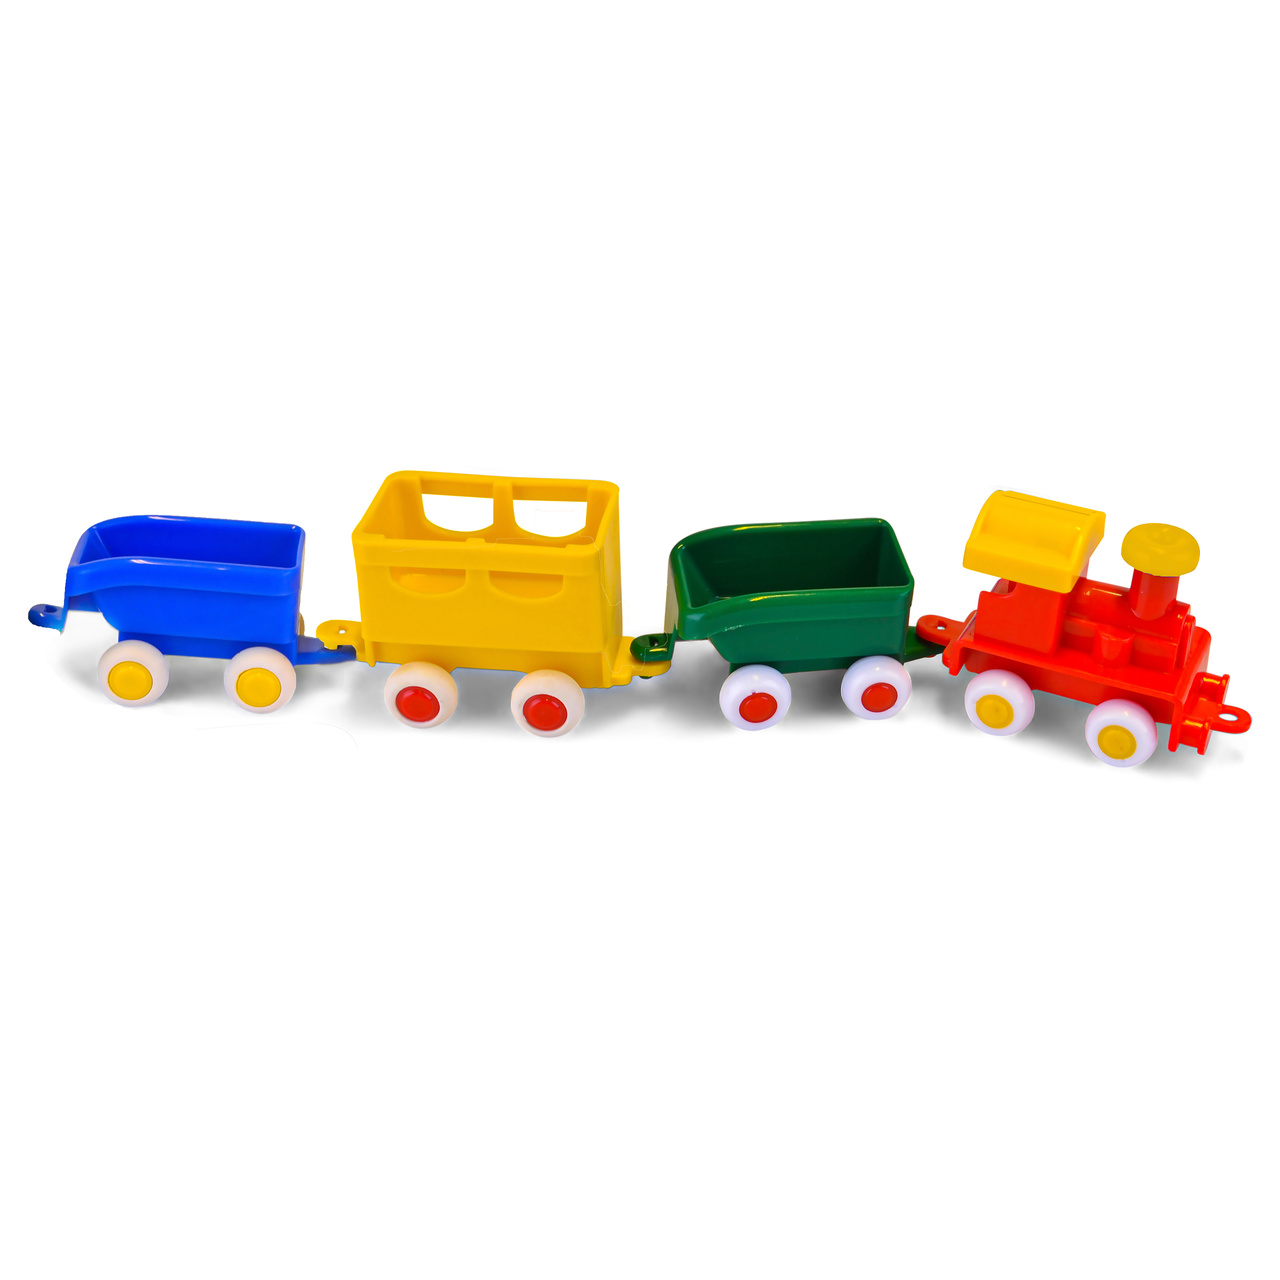 Mini Chubbies Train set